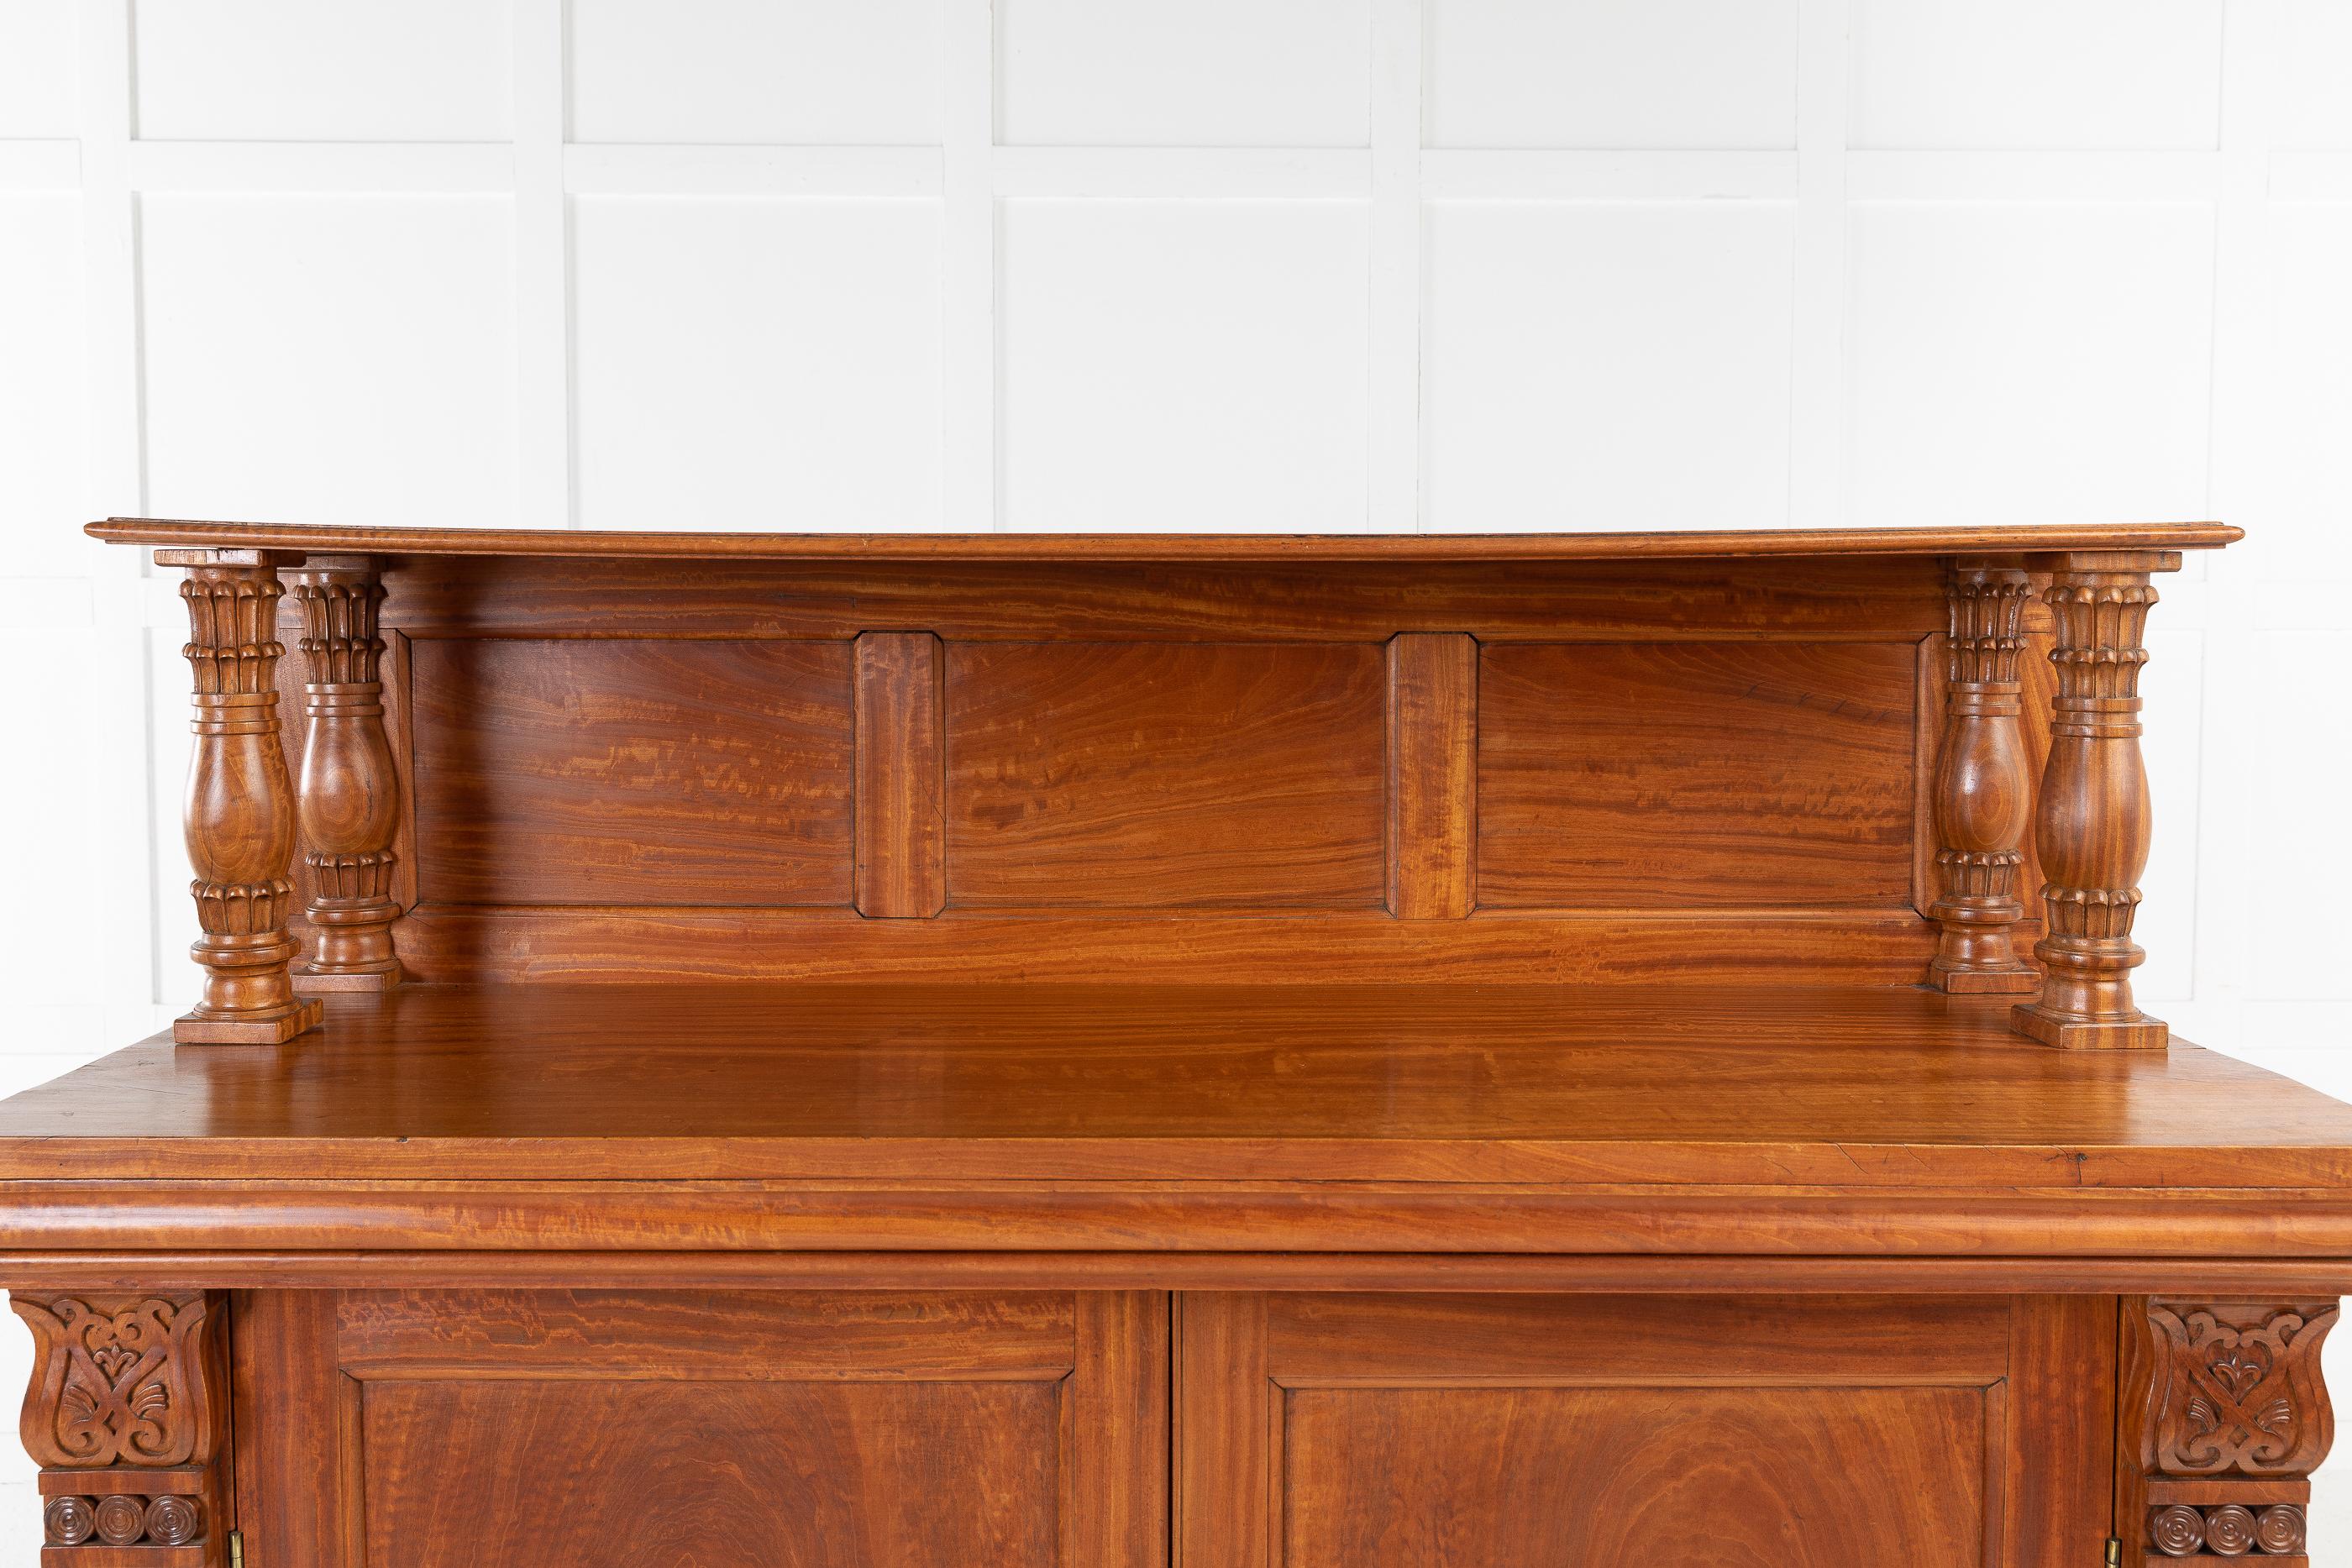 Superbe et rare armoire anglo-indienne du 19ème siècle avec des détails sculptés de grande qualité. Le meilleur bois de satin massif disponible a été choisi pour fabriquer ce meuble, même les planches arrière sont en satin de la meilleure qualité.